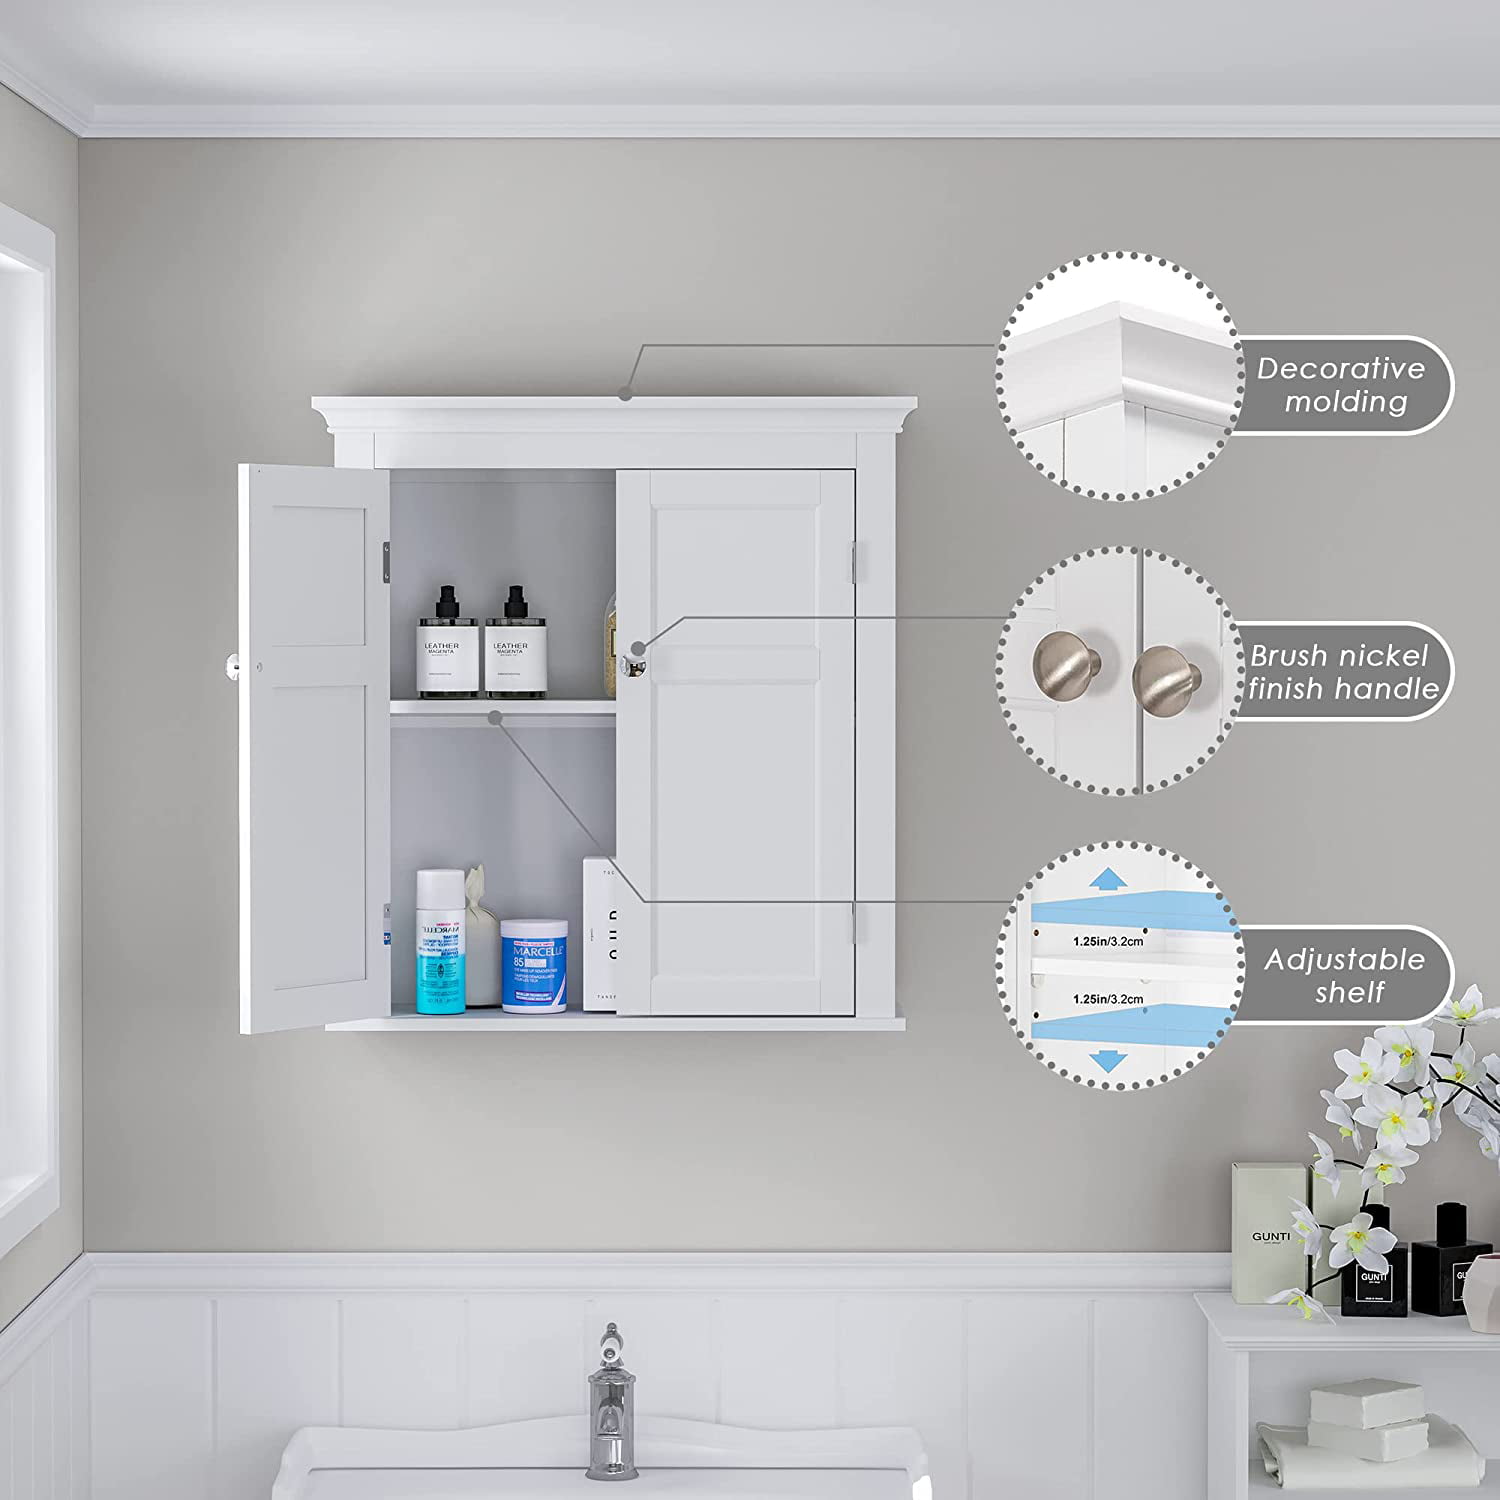 Buy UTEX Bathroom Wall Cabinet,Bathroom Cabinet Wall Mounted with Doors ...